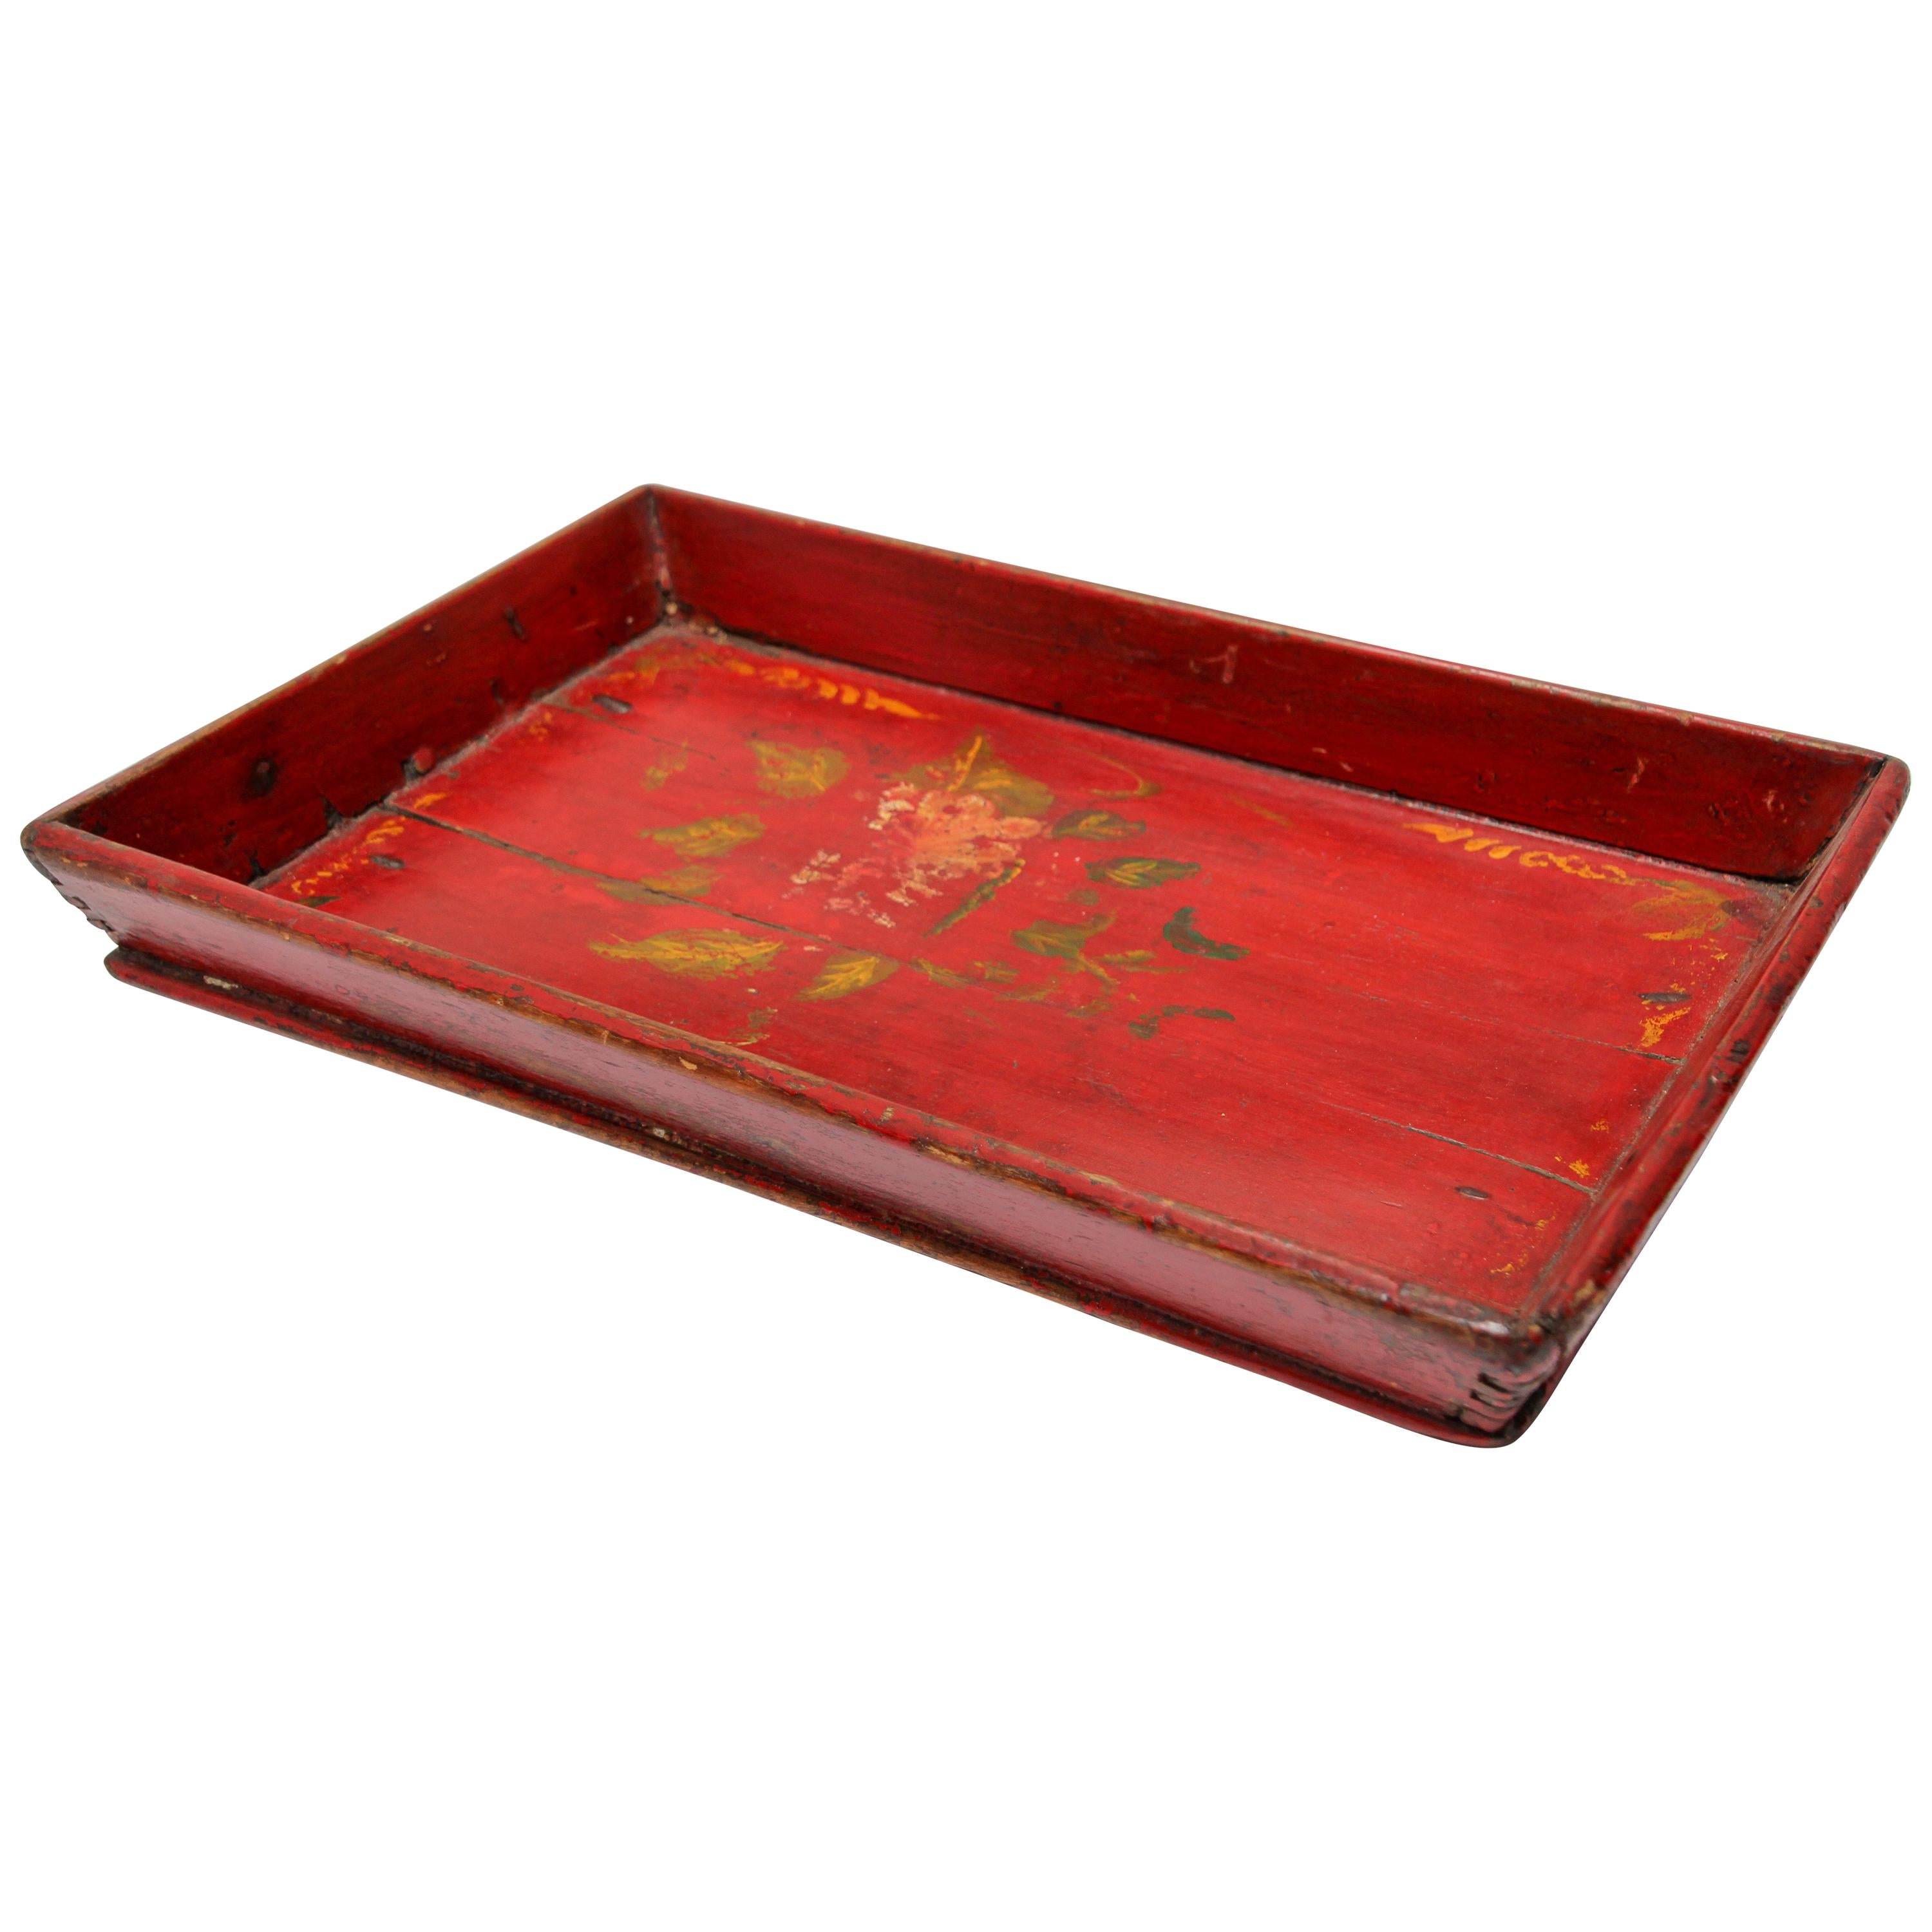 Plateau de service chinois ancien en bois rouge peint à la main